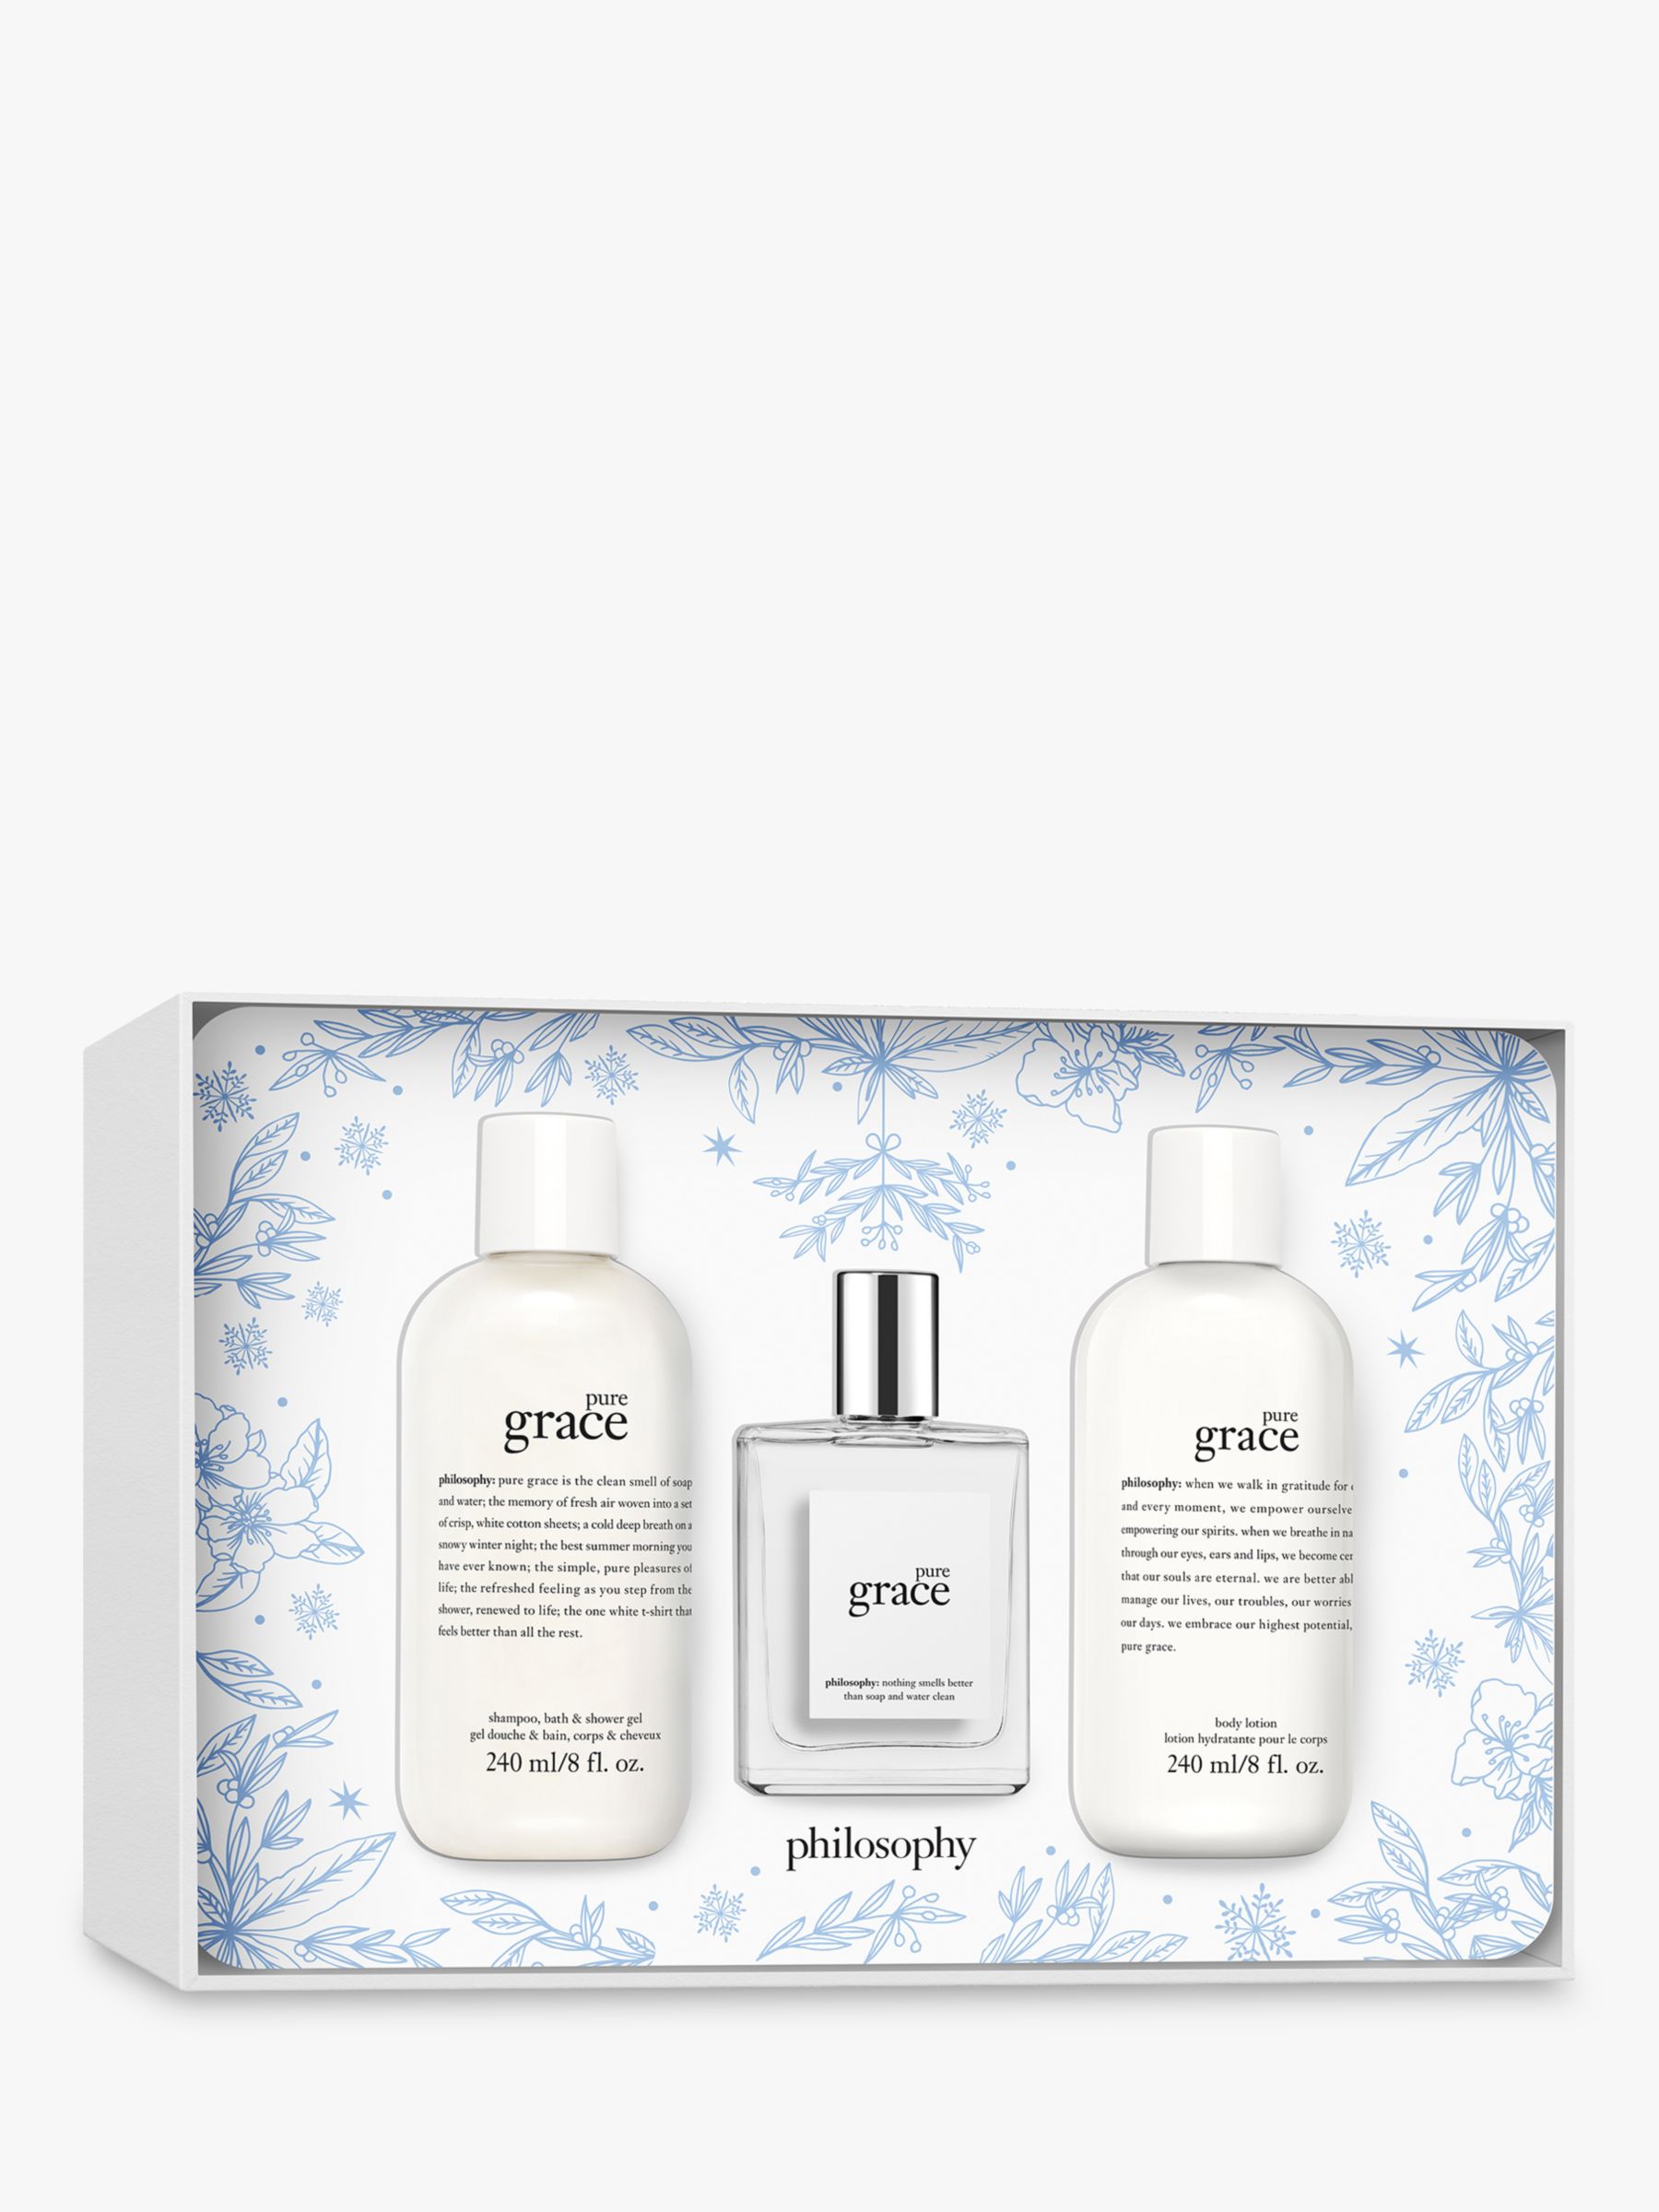 Philosophy Pure Grace Eau de Toilette 60ml Fragrance Gift Set at John ...